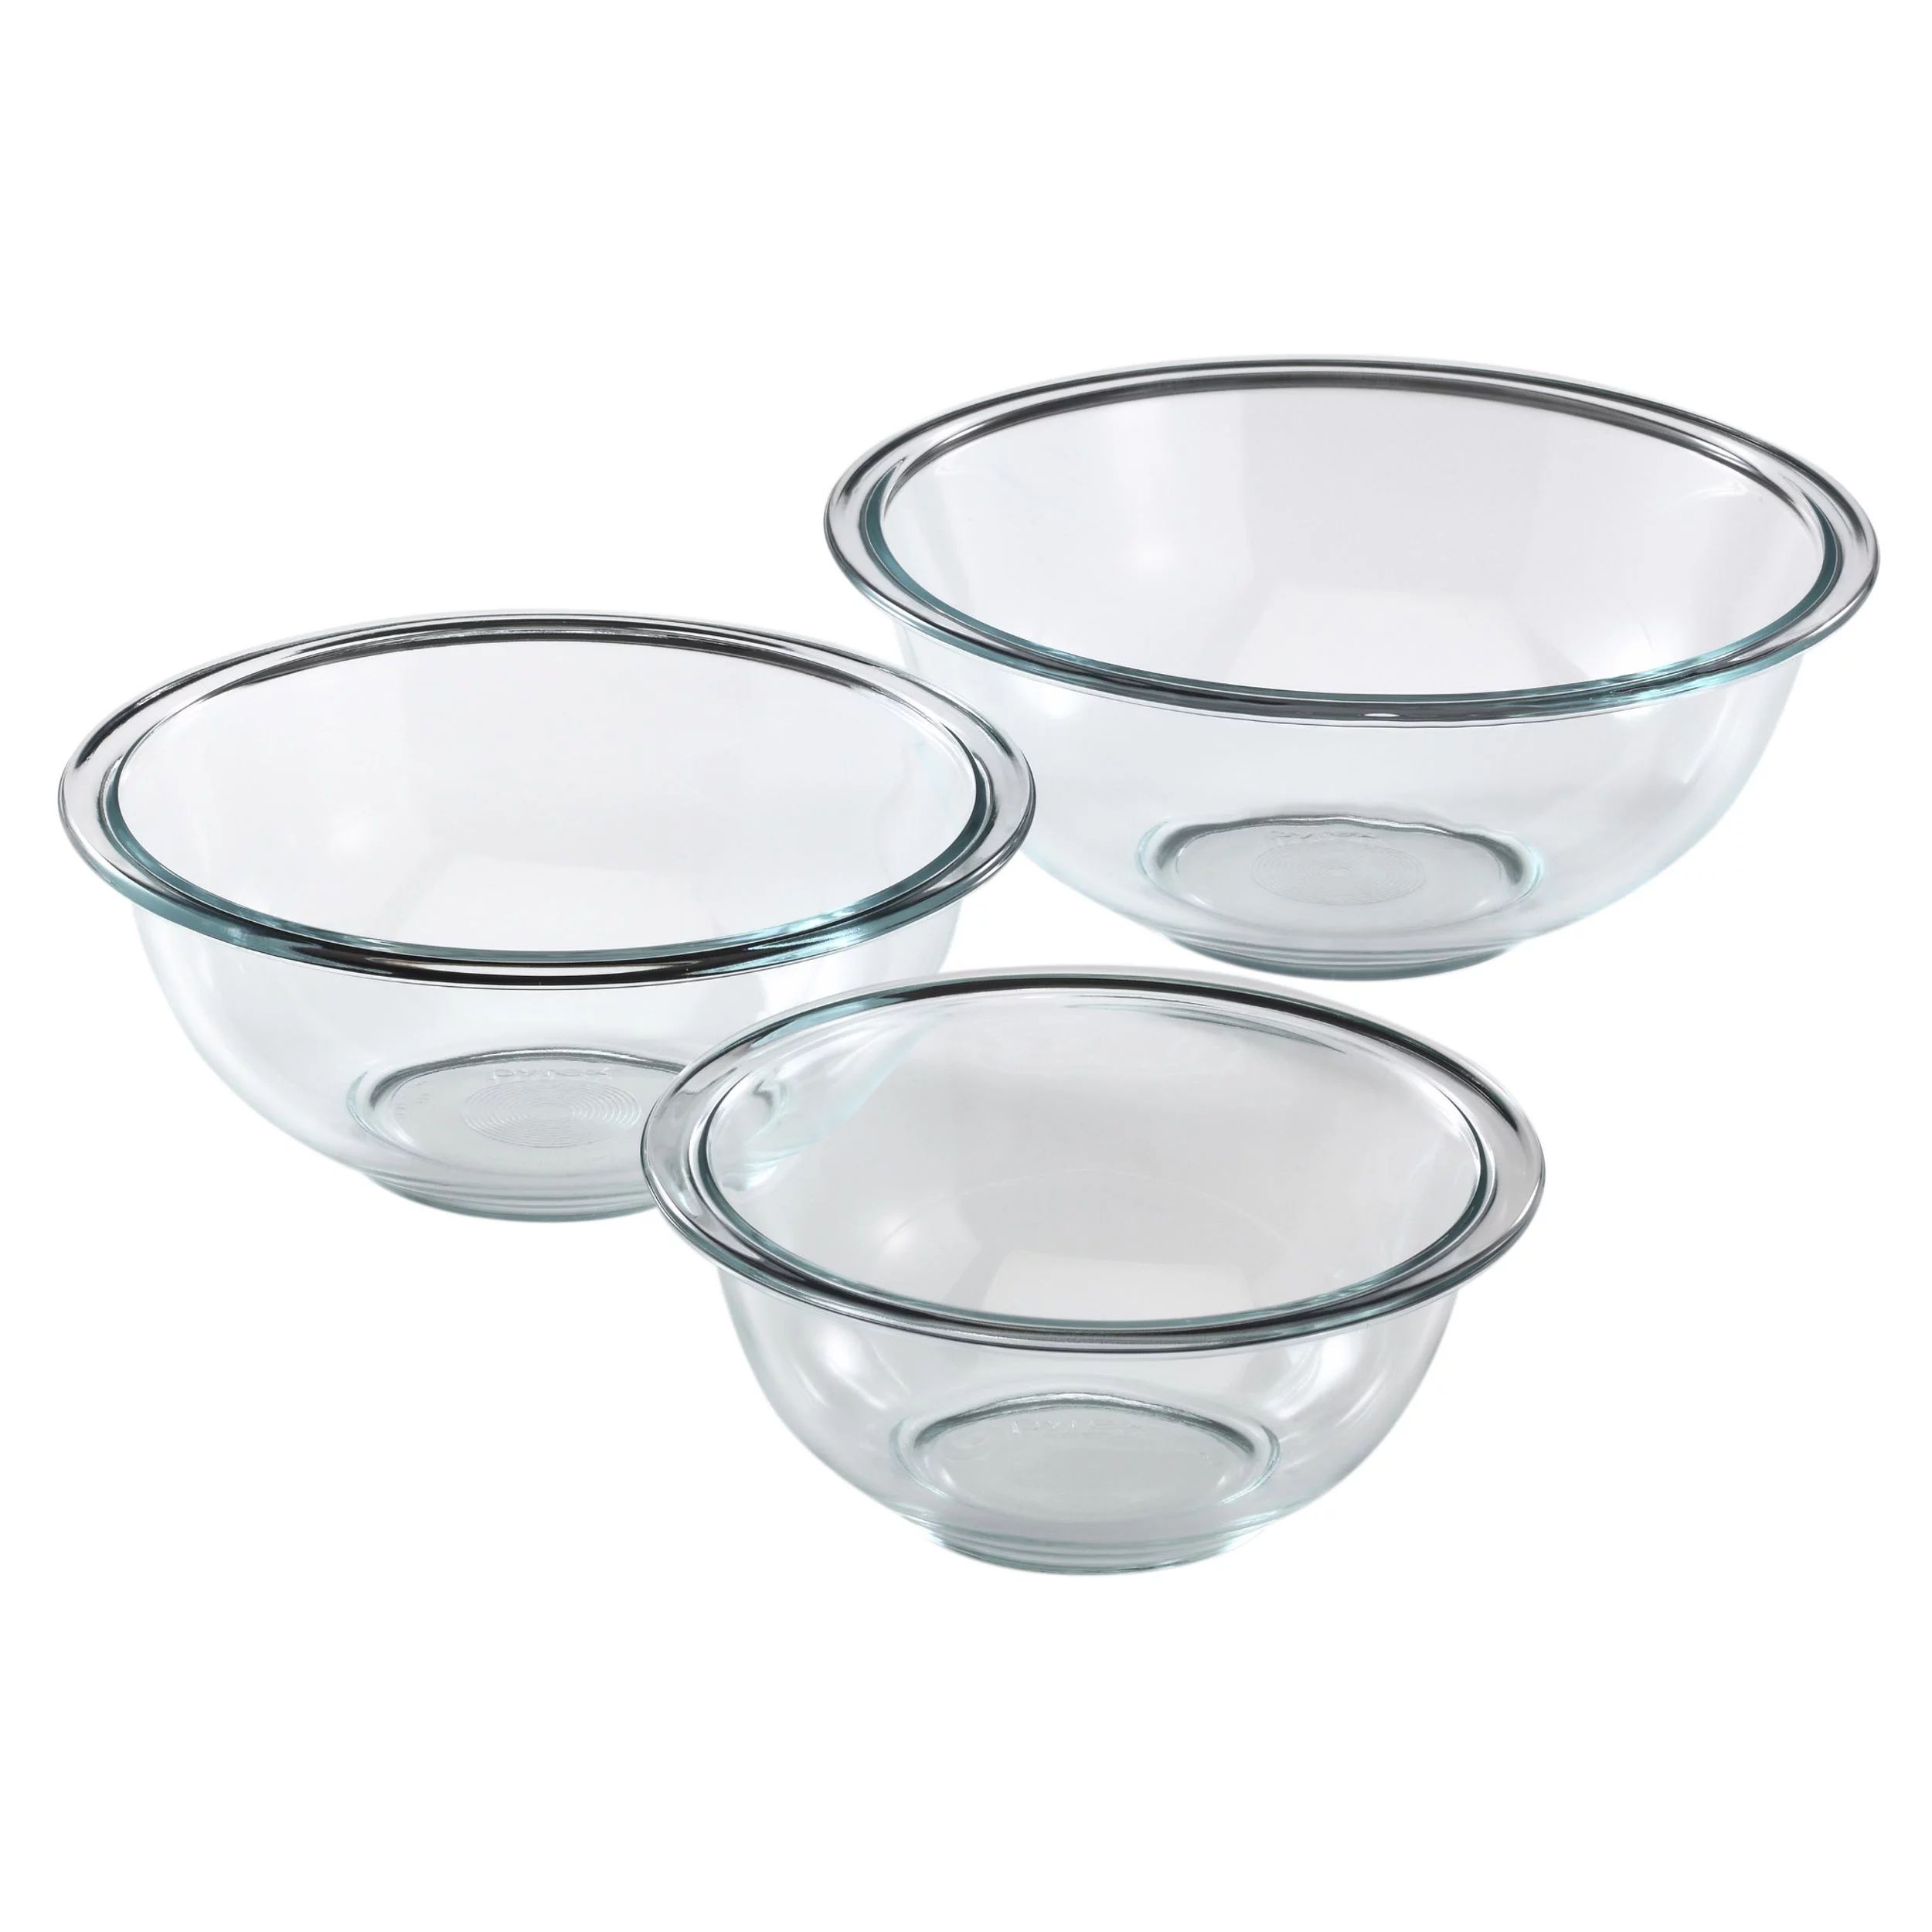 Pyrex 3-Piece Glass Mixing Bowl Set, Dishwasher Safe | Walmart (US)